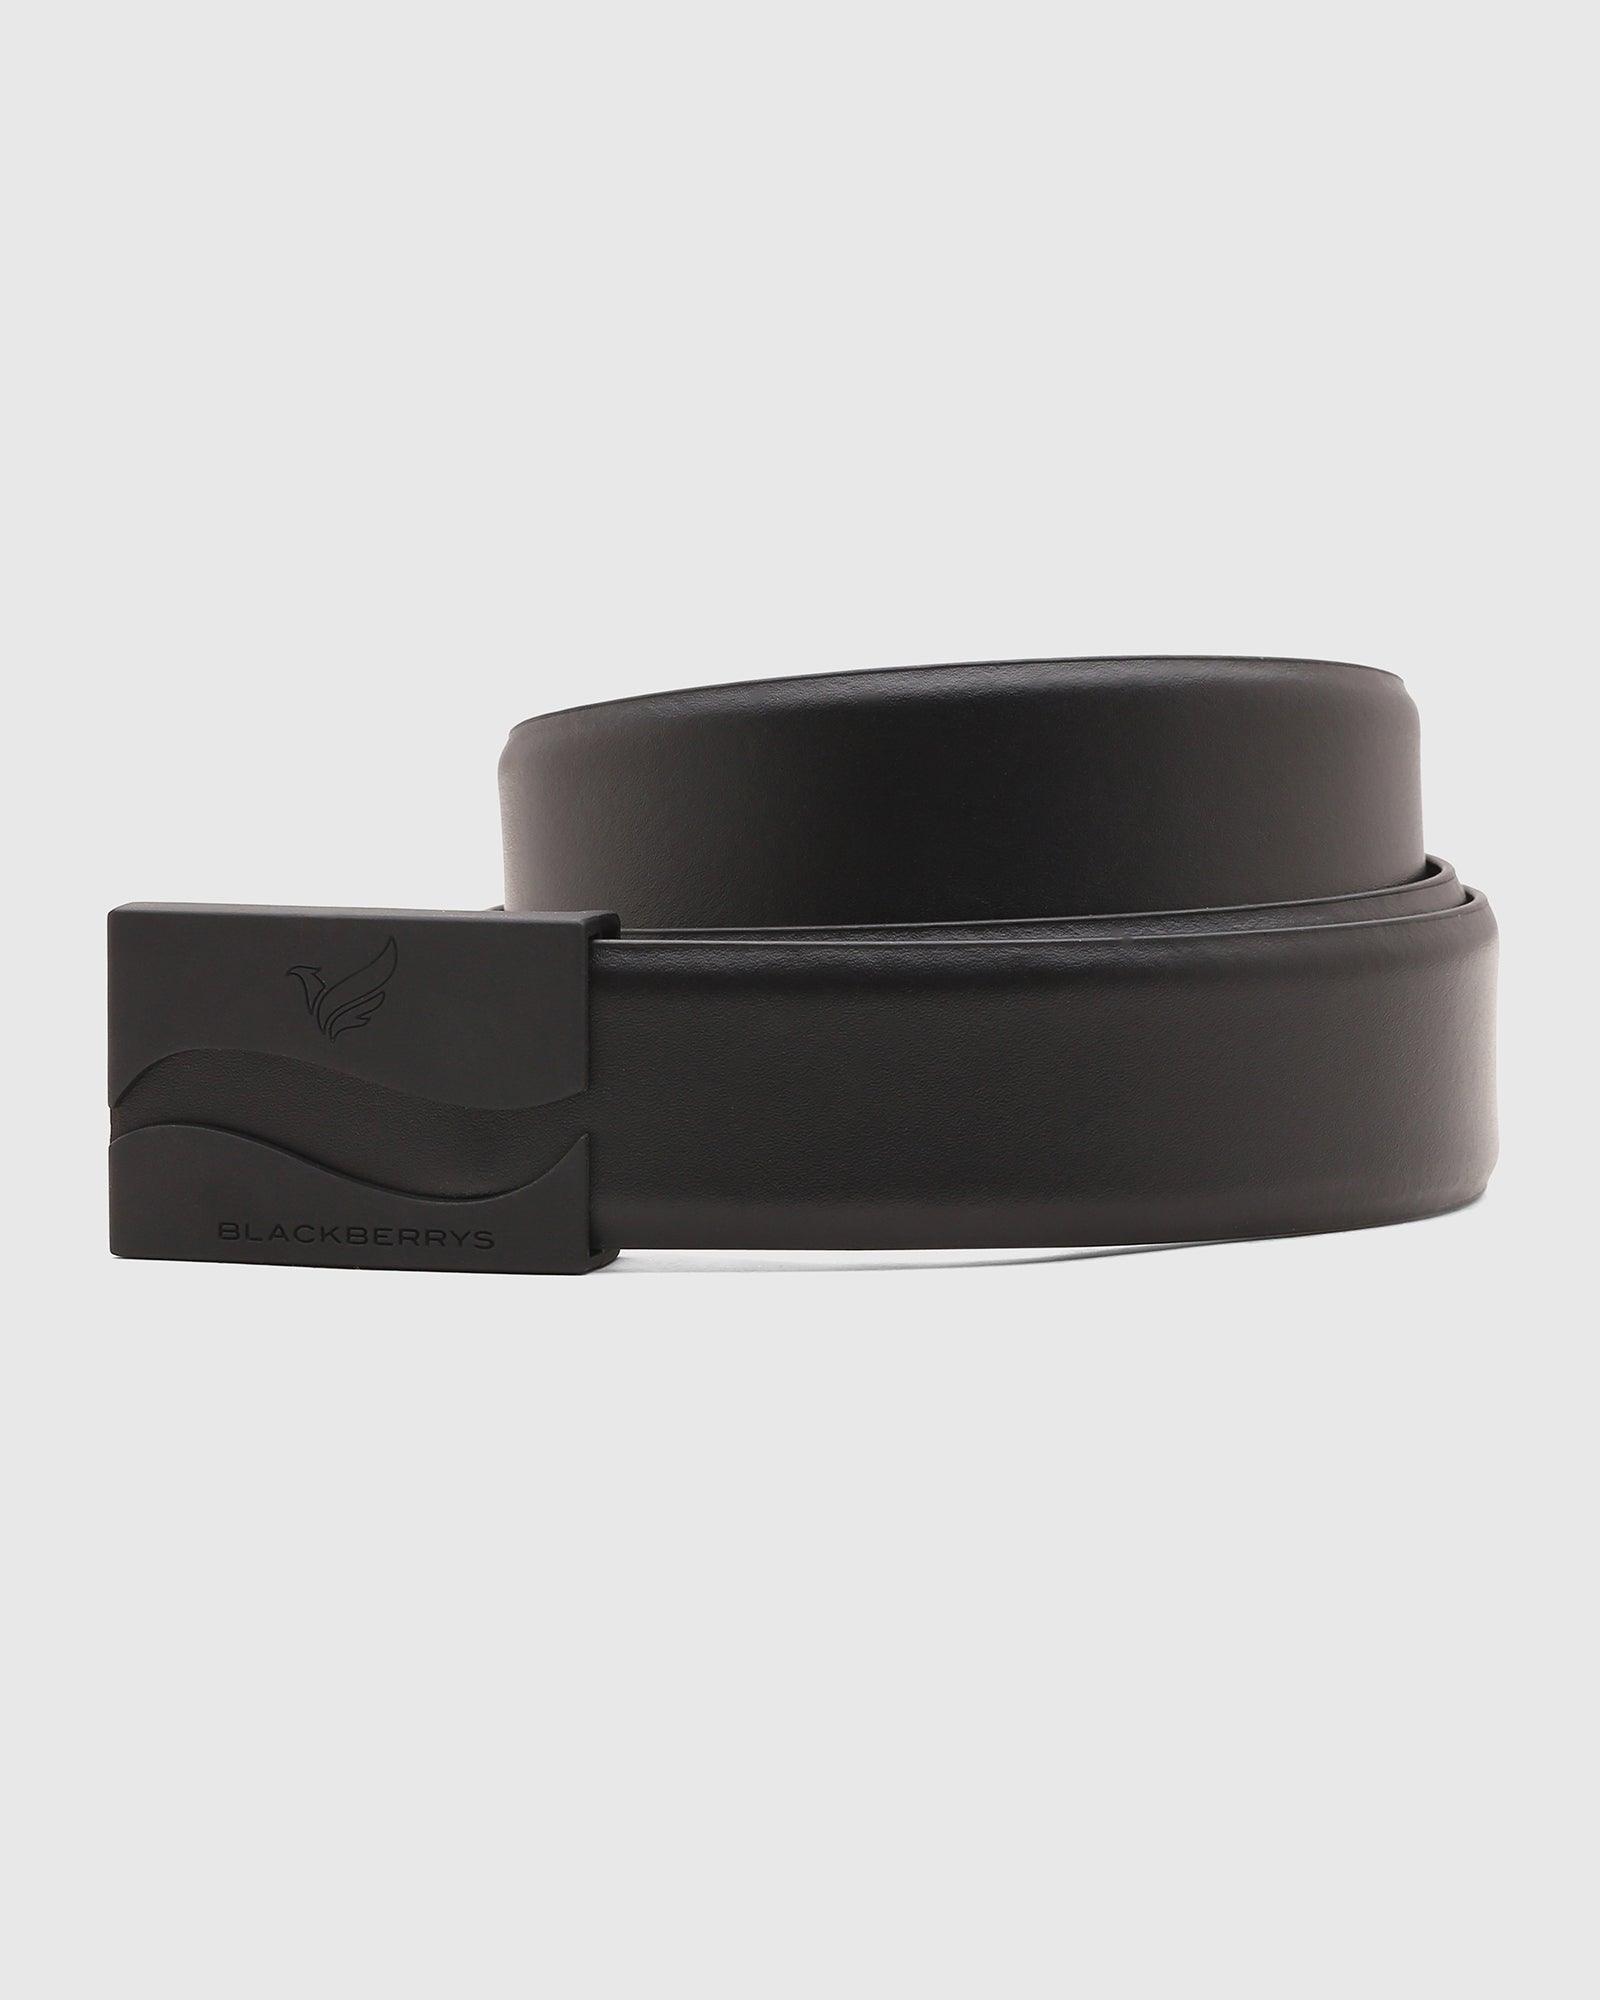 leather belt in black (santiago)